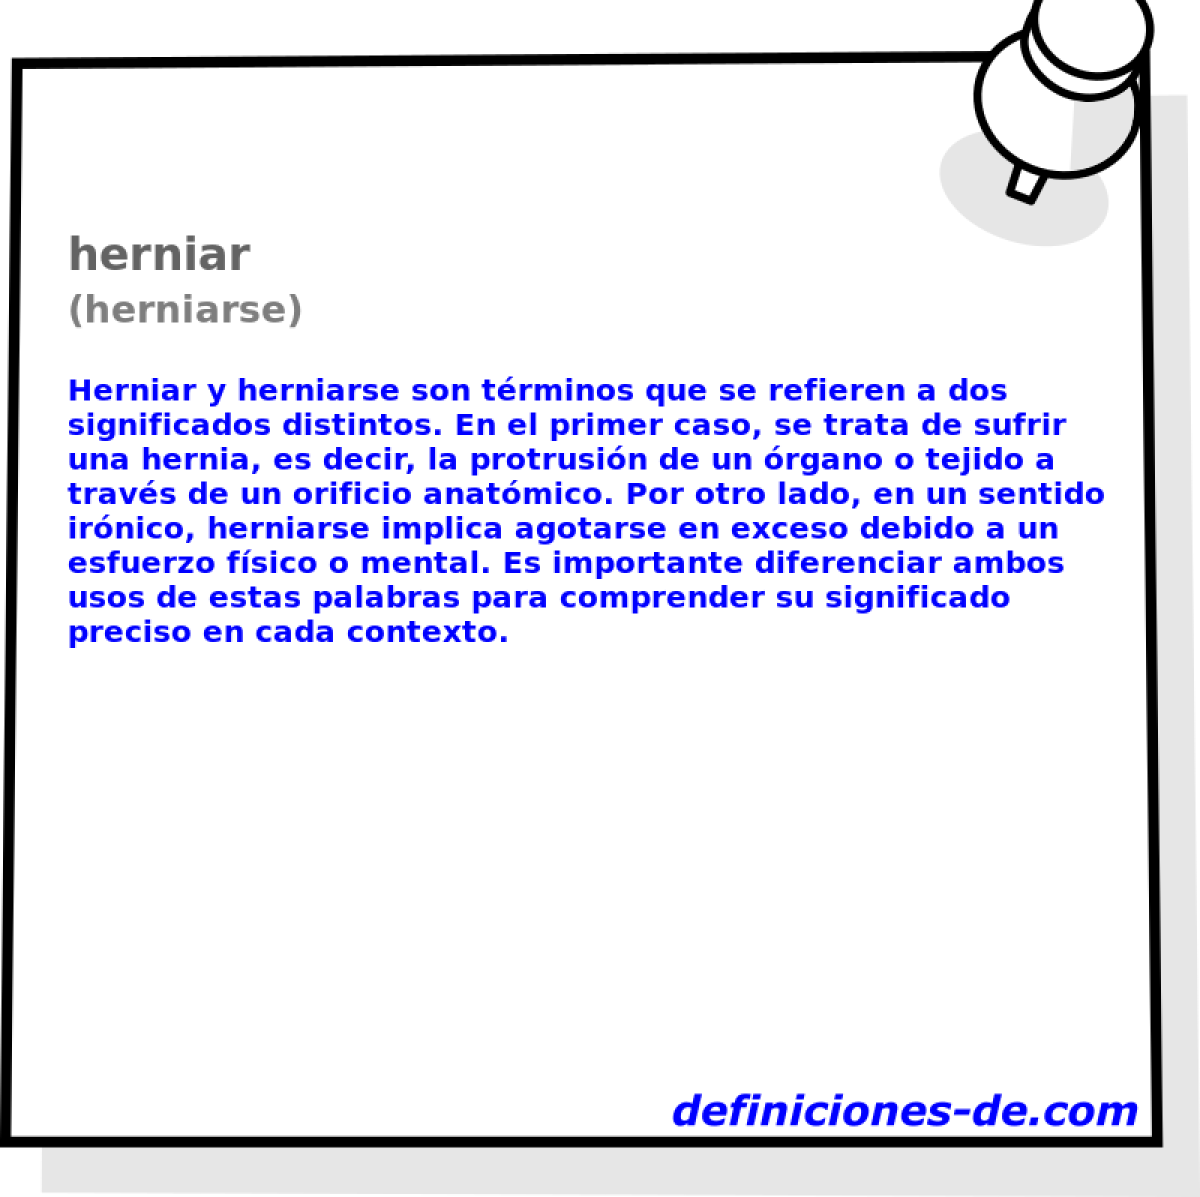 herniar (herniarse)